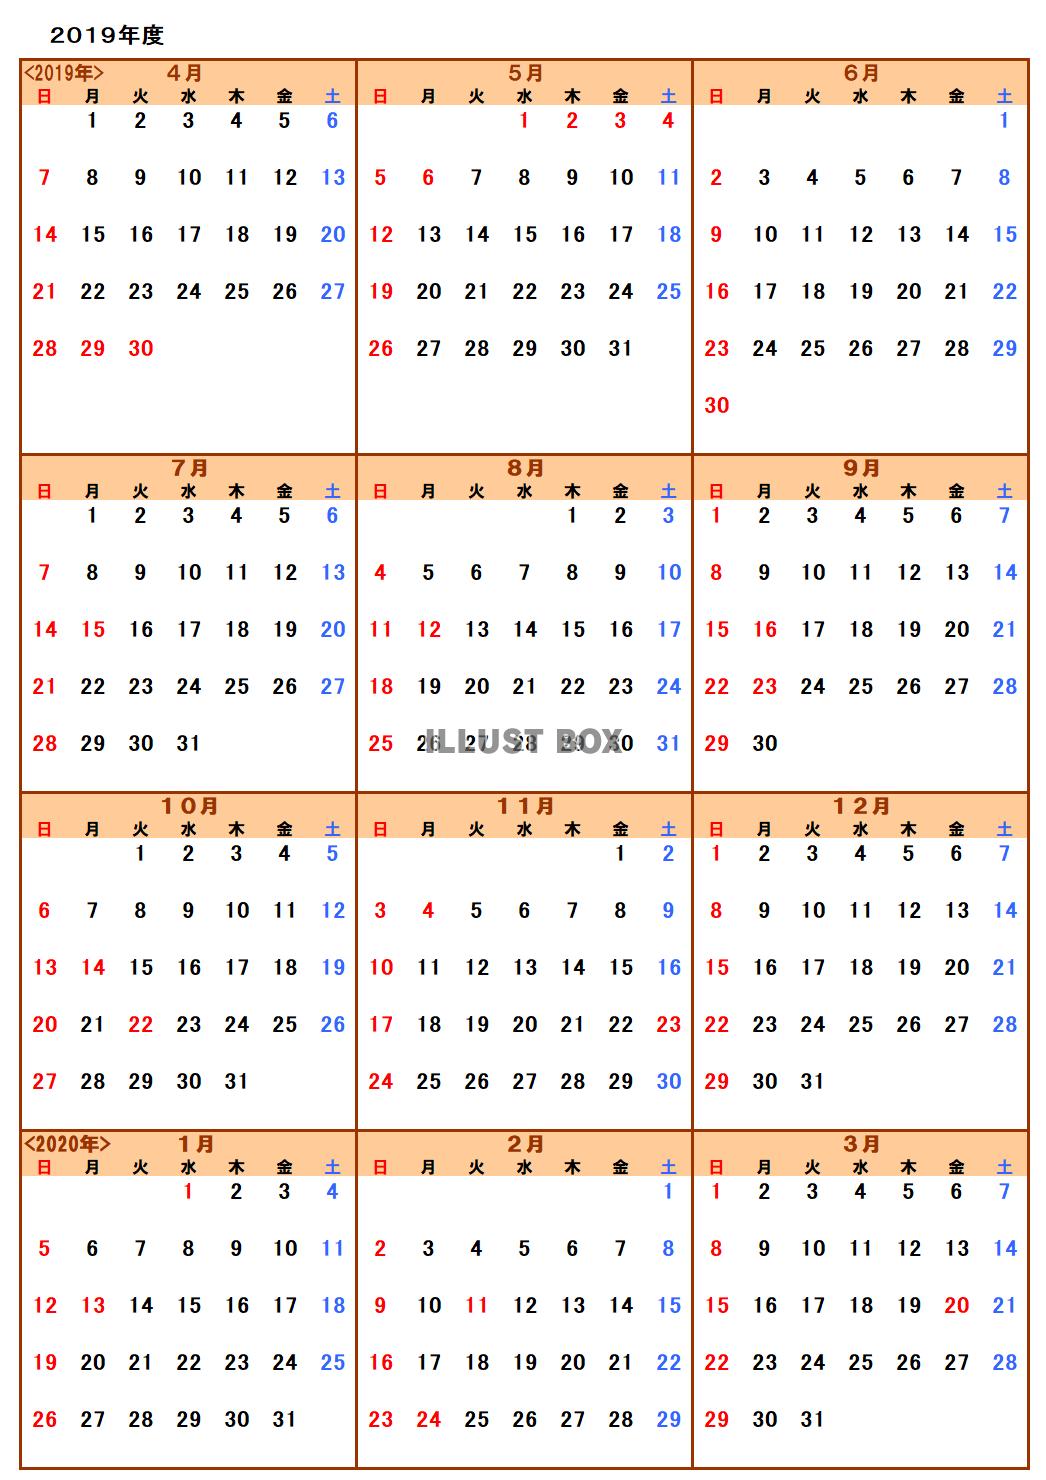 [{shashin}] 見る 2020年カレンダー 1月 最新の写真 - shashin infotiket